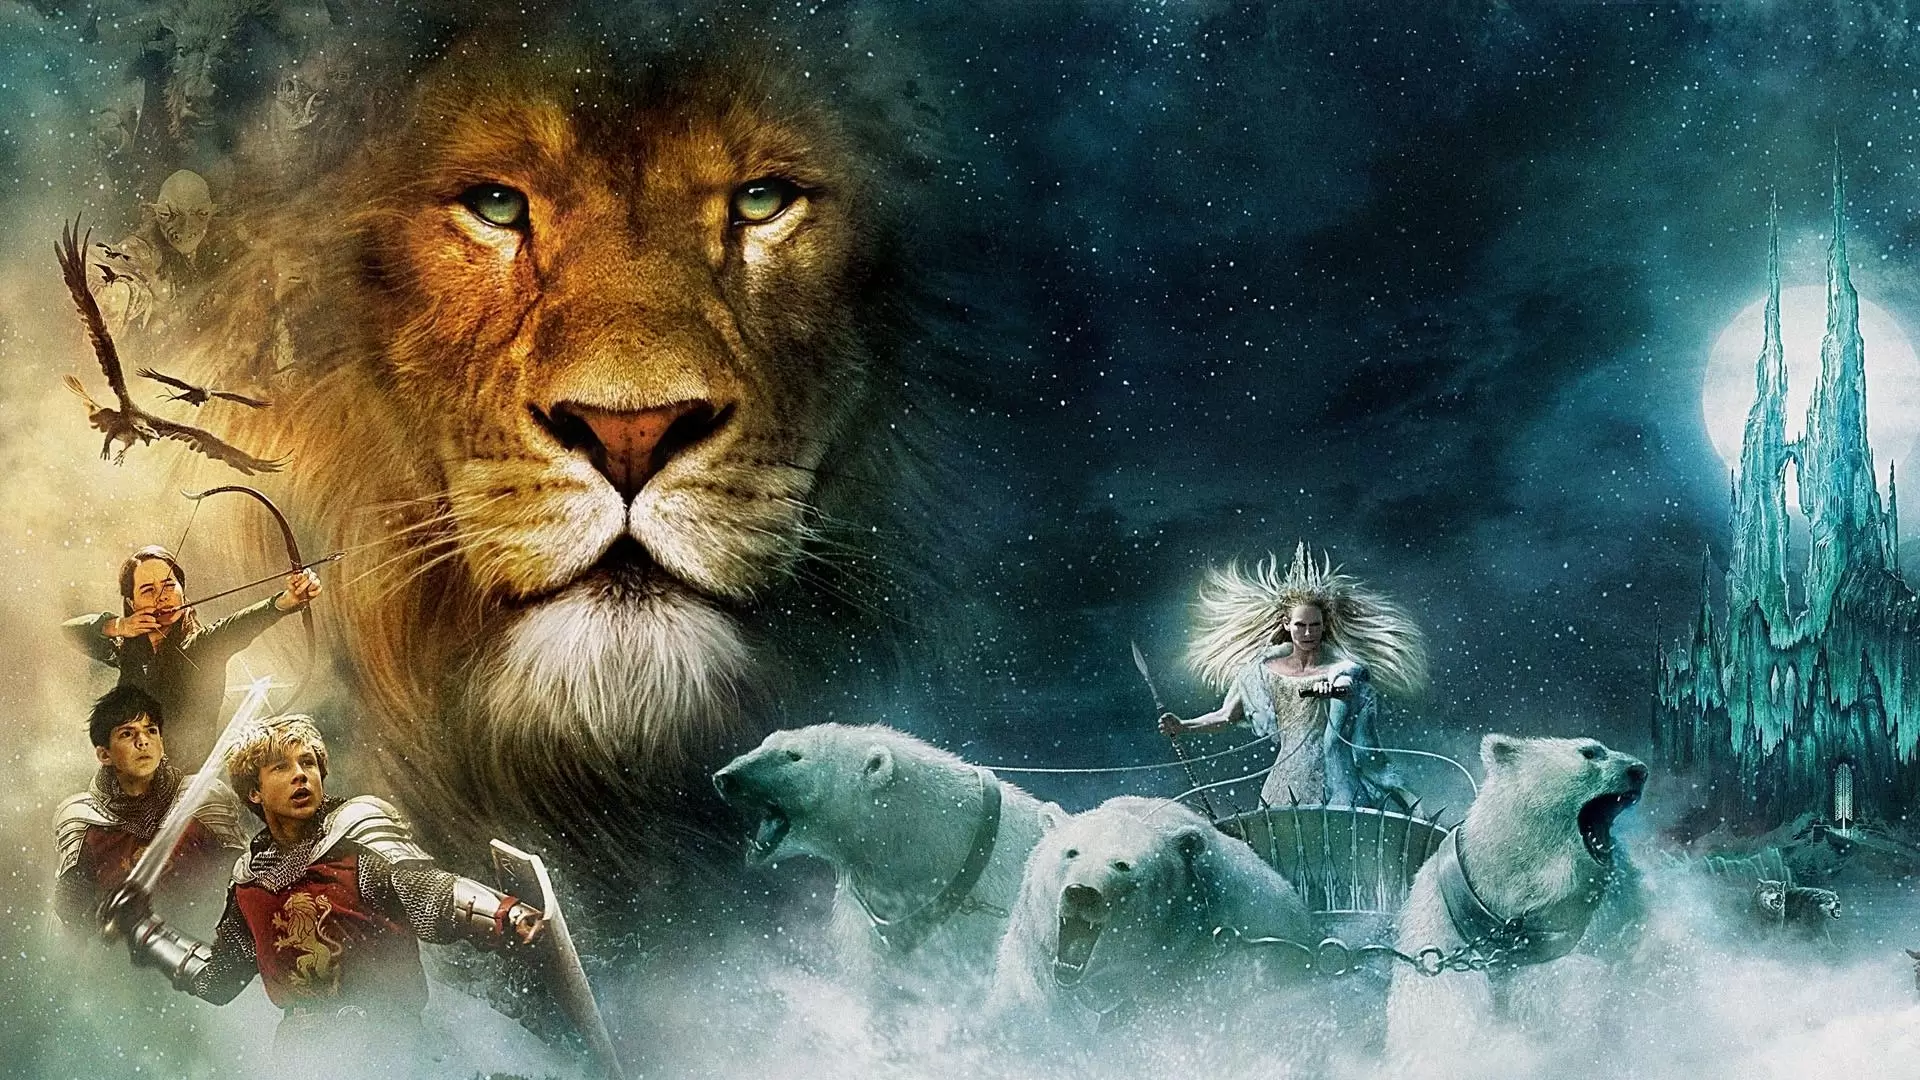 دانلود فیلم The Chronicles of Narnia: The Lion, the Witch and the Wardrobe 2005 (سرگذشت نارنیا: شیر، کمد و جادوگر) با زیرنویس فارسی و تماشای آنلاین